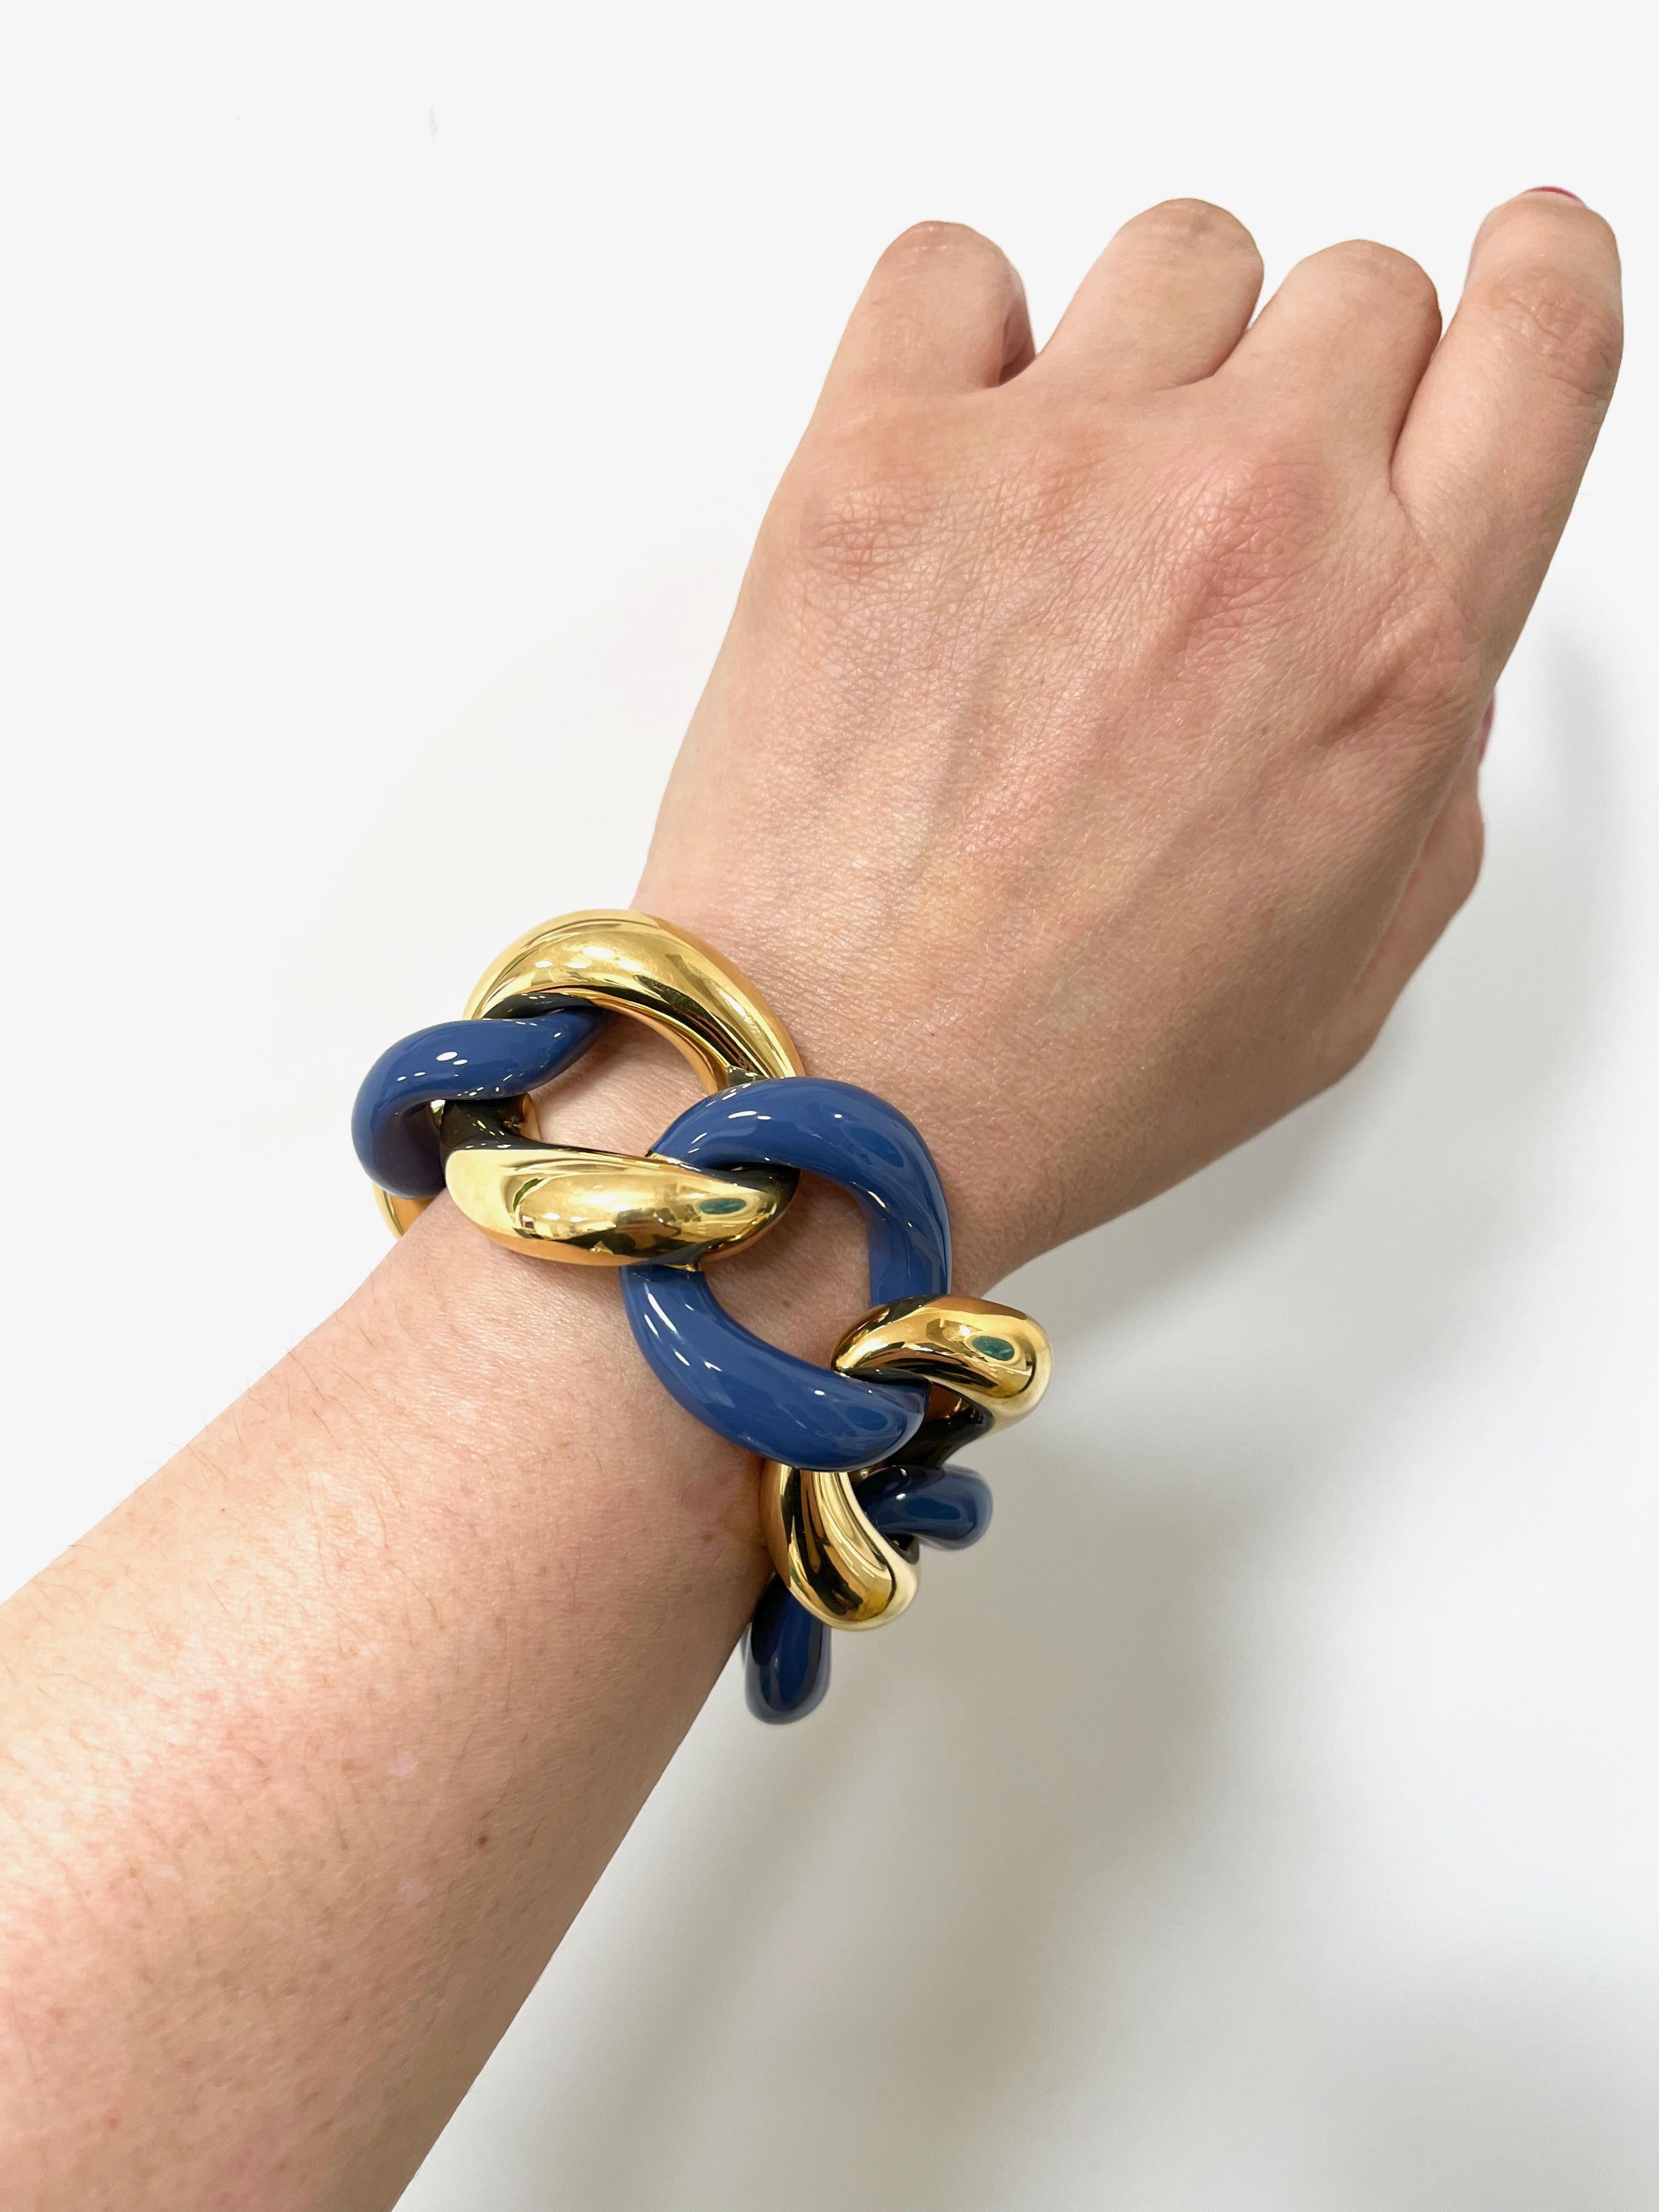 Bracelet en argent 925 plaqué or avec émail bluejeans.
Ce bracelet groumette classique est fabriqué à la main en Italie.
Chaque lien est peint à la main.
Le bracelet est conçu par Fraleoni, une marque de bijoux italienne basée à Rome.
Ce modèle est